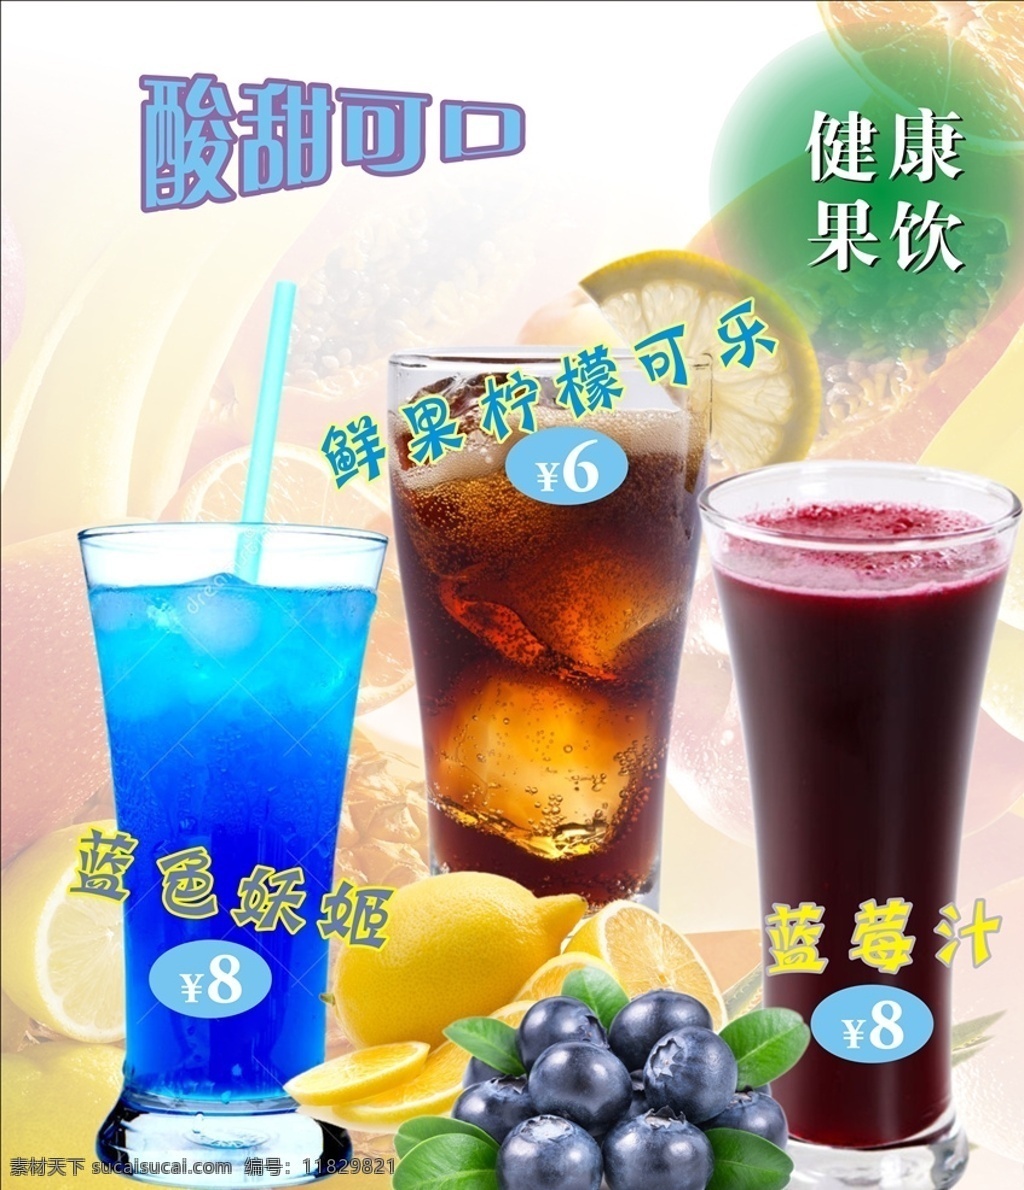 奶茶店海报 蓝色妖姬 夏日饮品 店长推荐 果汁 奶茶 招贴设计